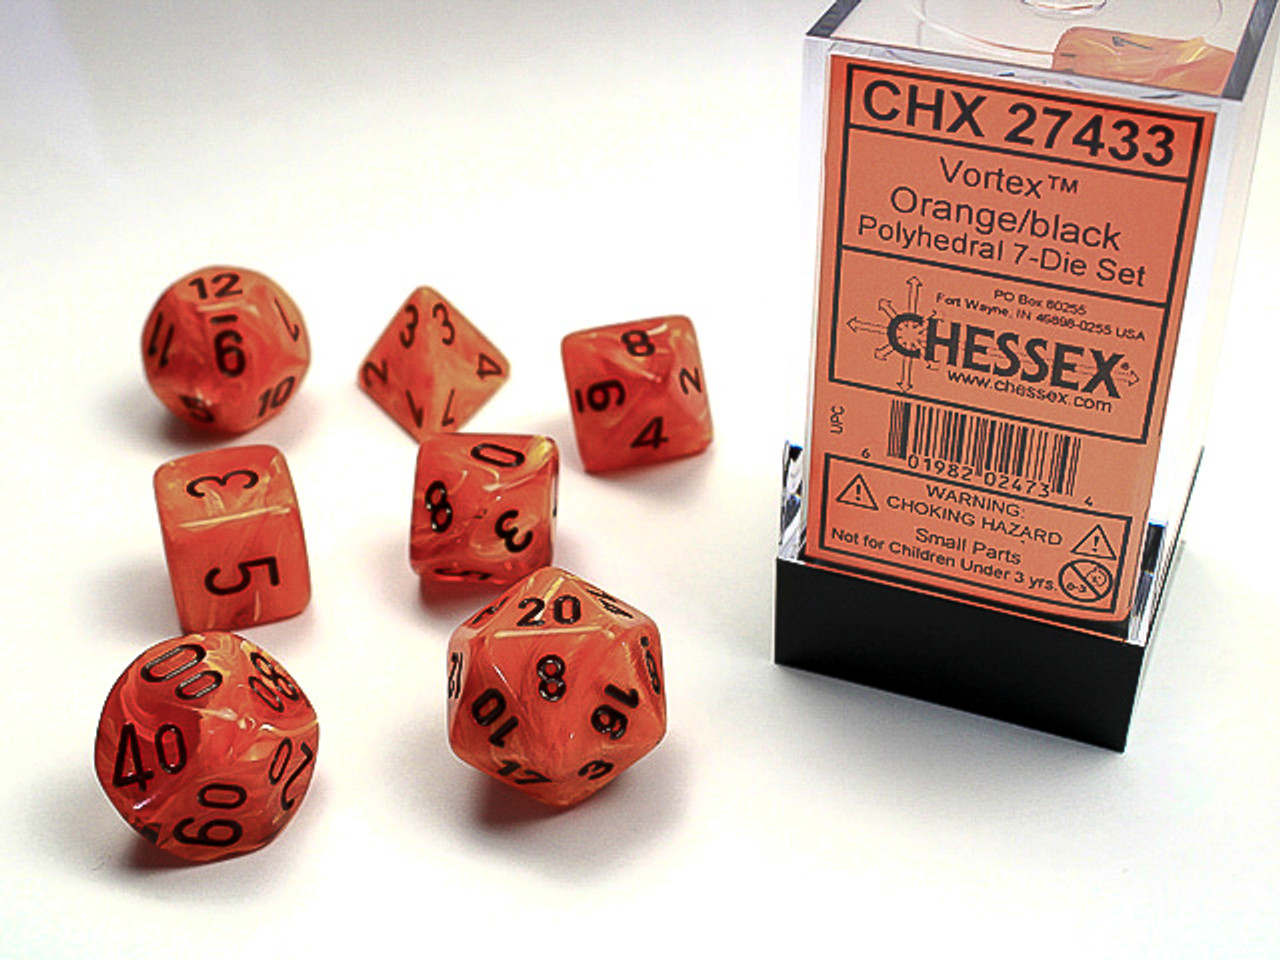 27433 - Vortex® Polyhedral Orange/black 7-Die Set